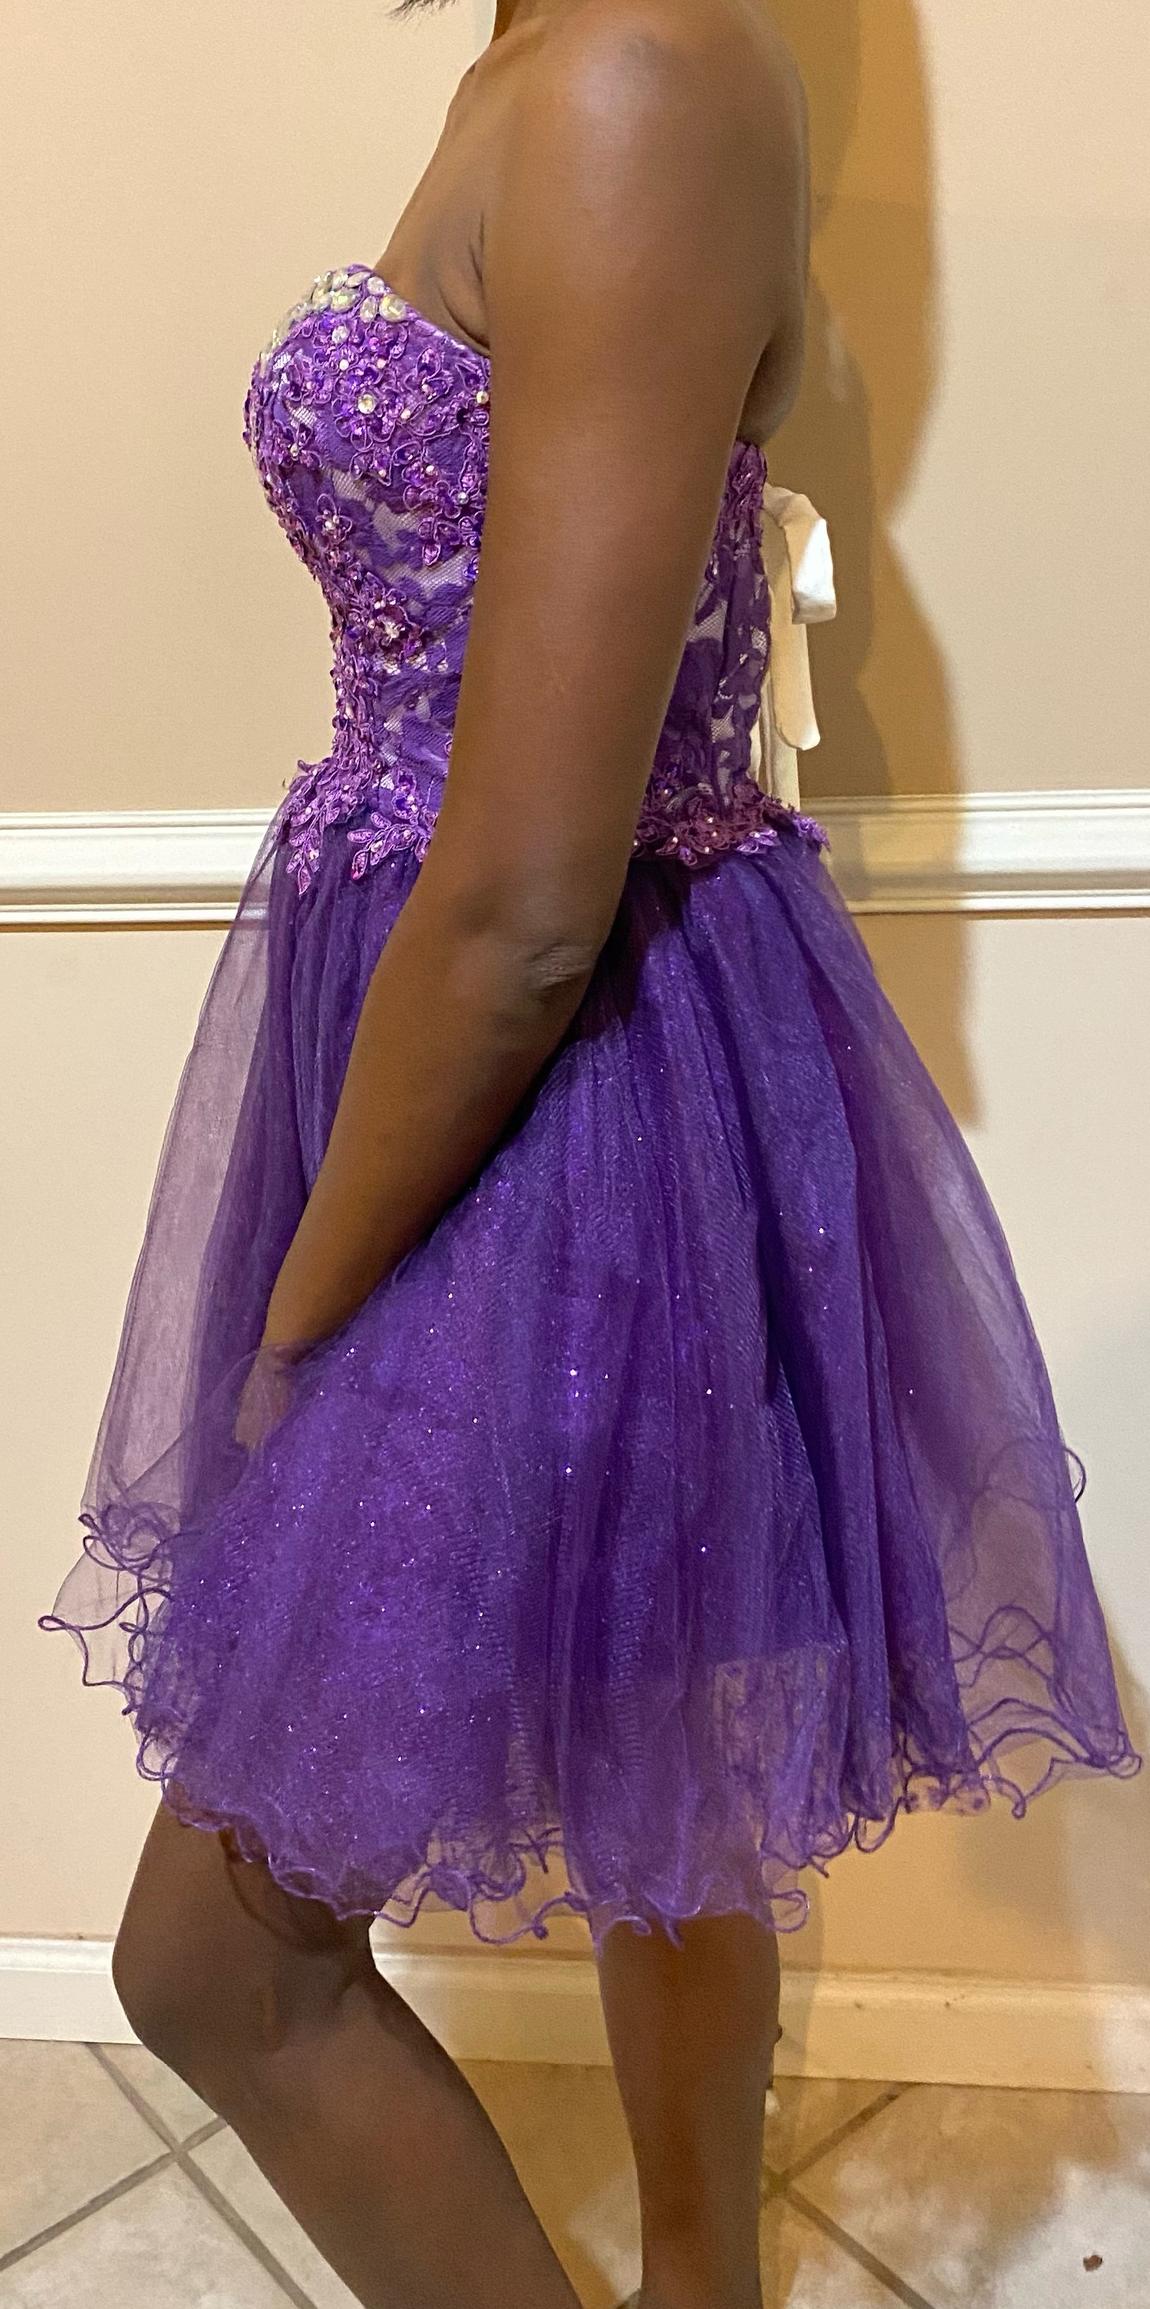 Von Maur Cocktail Dress | Homecoming Dress | Size 2 | Color: Purple